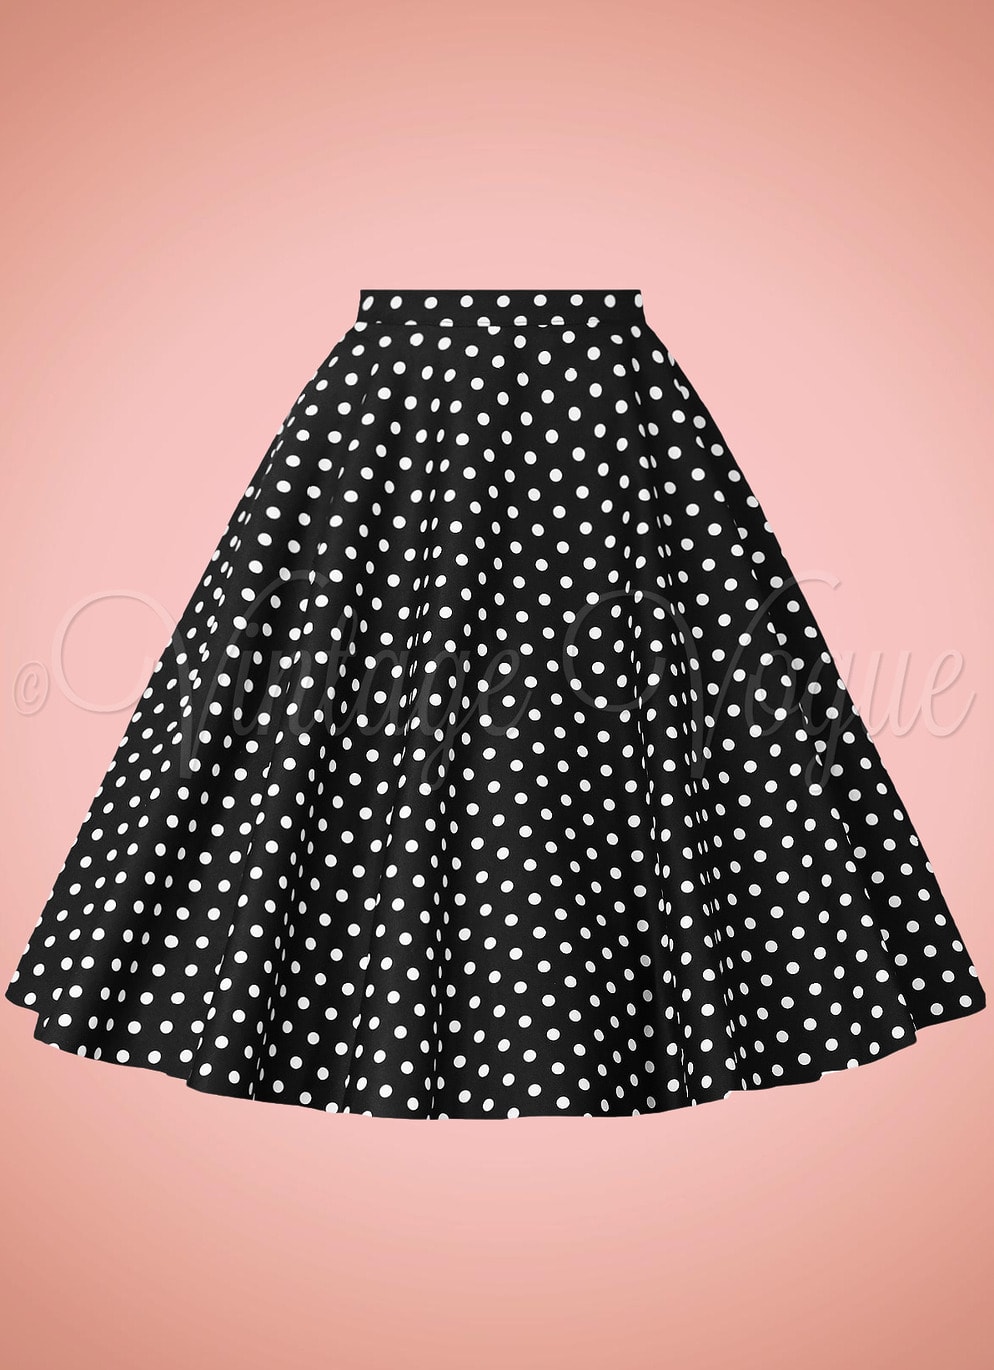 Banned 50er Jahre Retro Vintage Rockabilly High Waist Polka Dots Punkte Tellerrock Dot Days Skirt in Schwarz weiß gepunktet SK25567